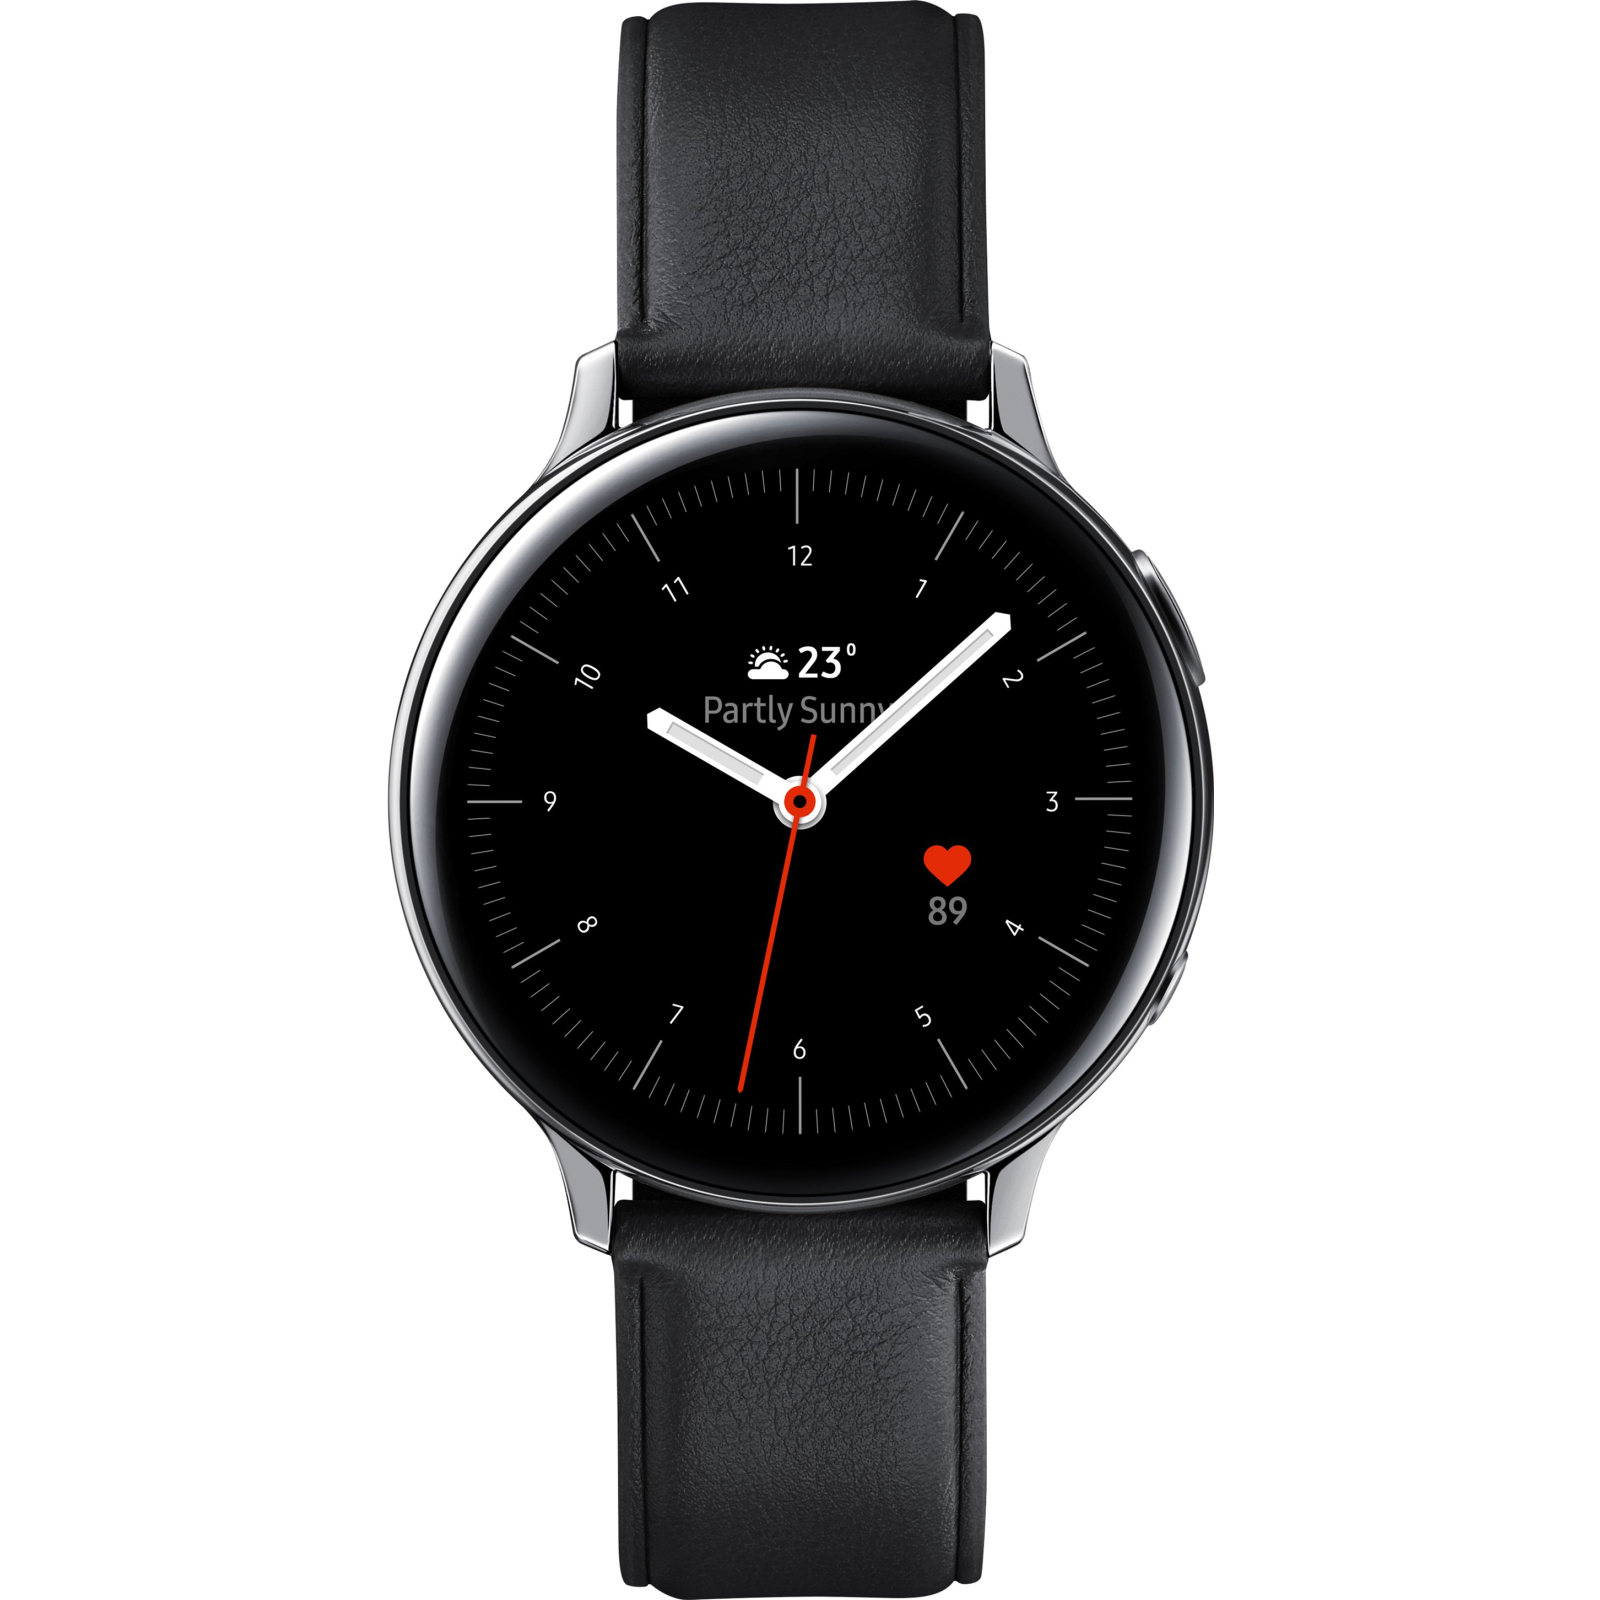 Смарт-часы Samsung SM-R820S/4 (Galaxy Watch Active2 44mm SS) Silver (SM-R820NSSASEK)